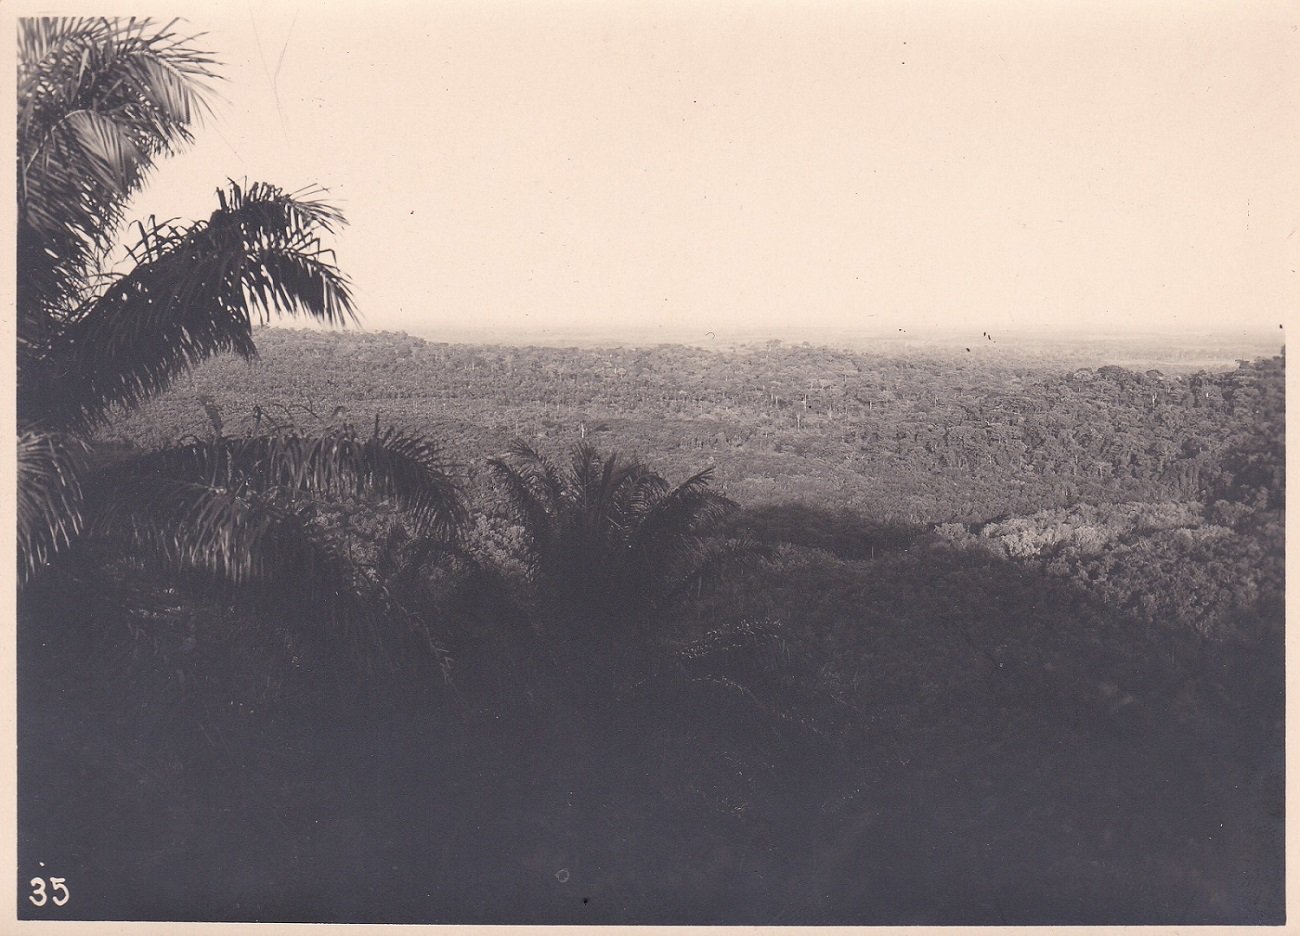   2 Original-Photographien mit Bezug zur deutschen Kolonialzeit in Kamerun. Historische Photographien des Flusses Sanaga und der Region um Moliwe. 